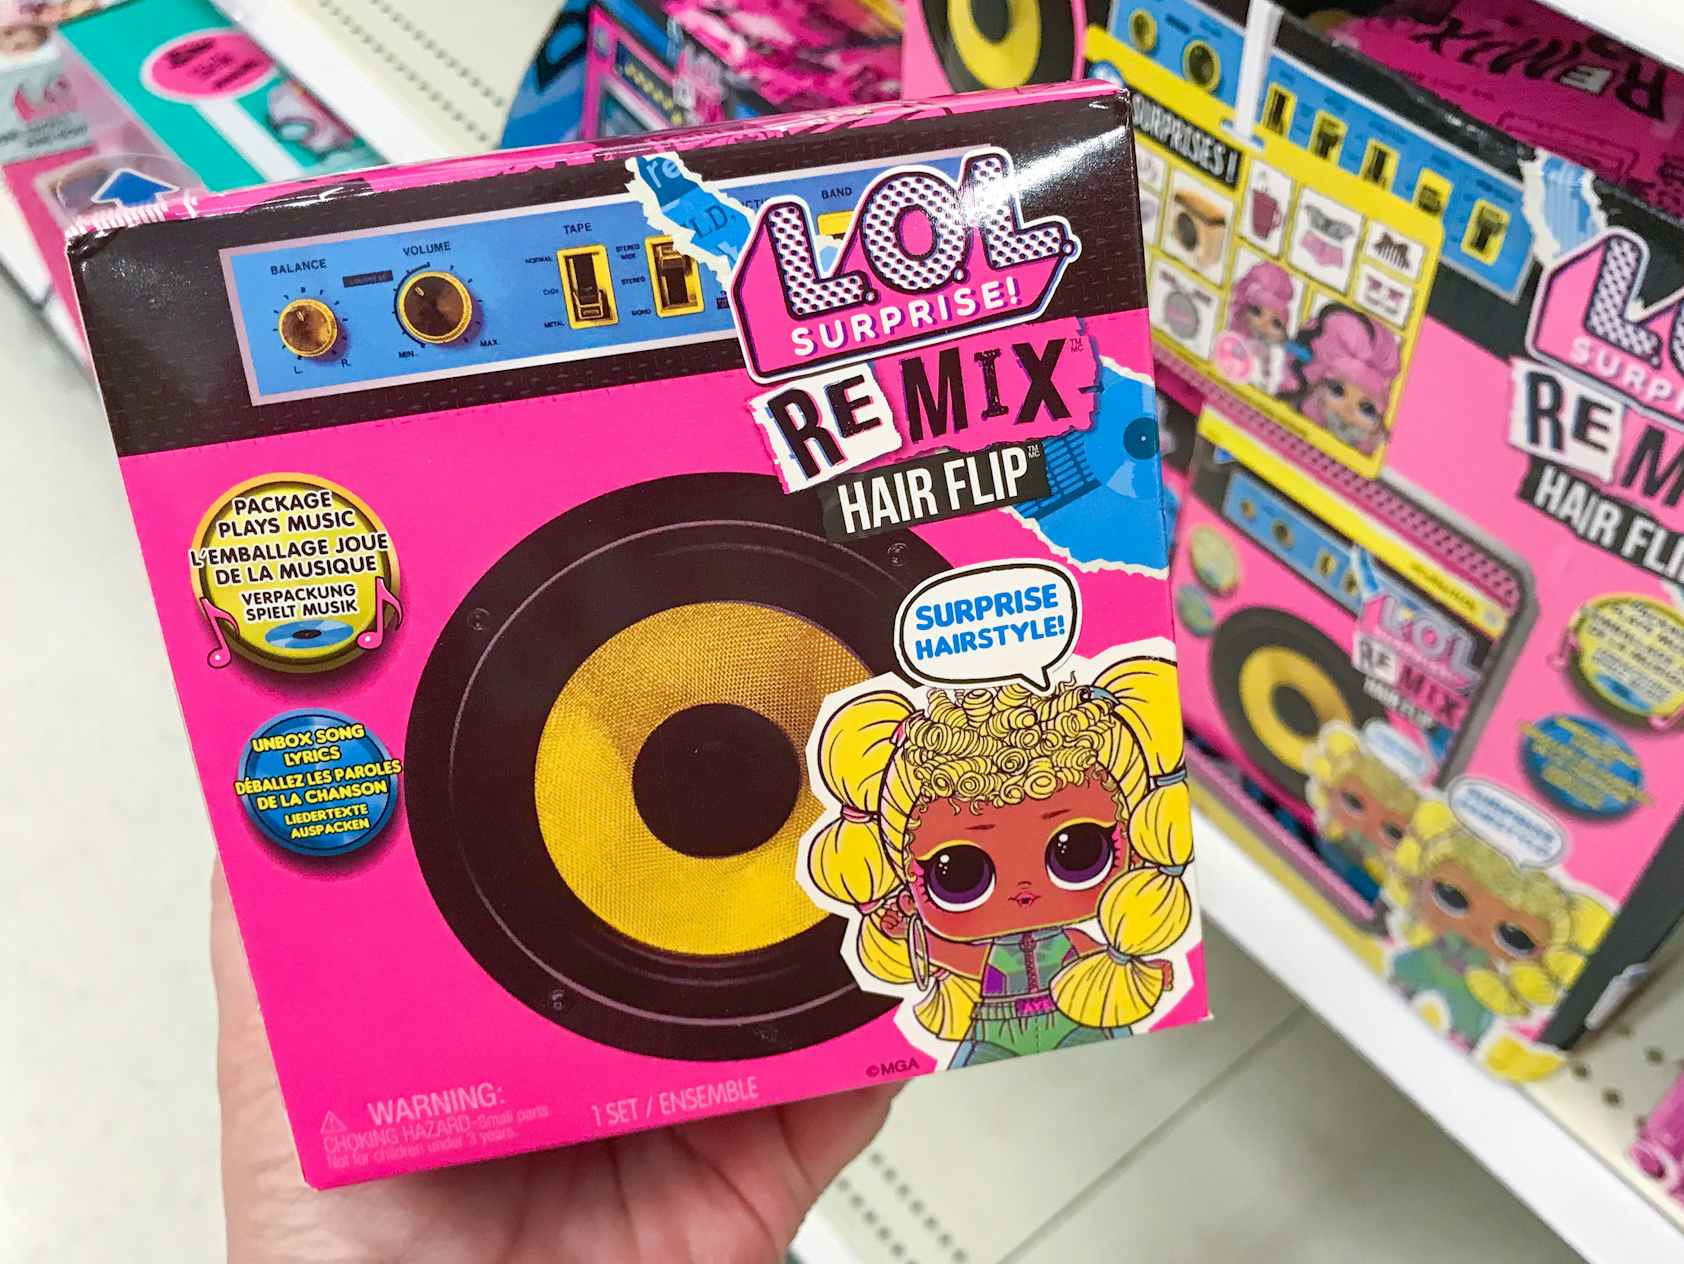 LOL surprise remix hair flip doll at Target